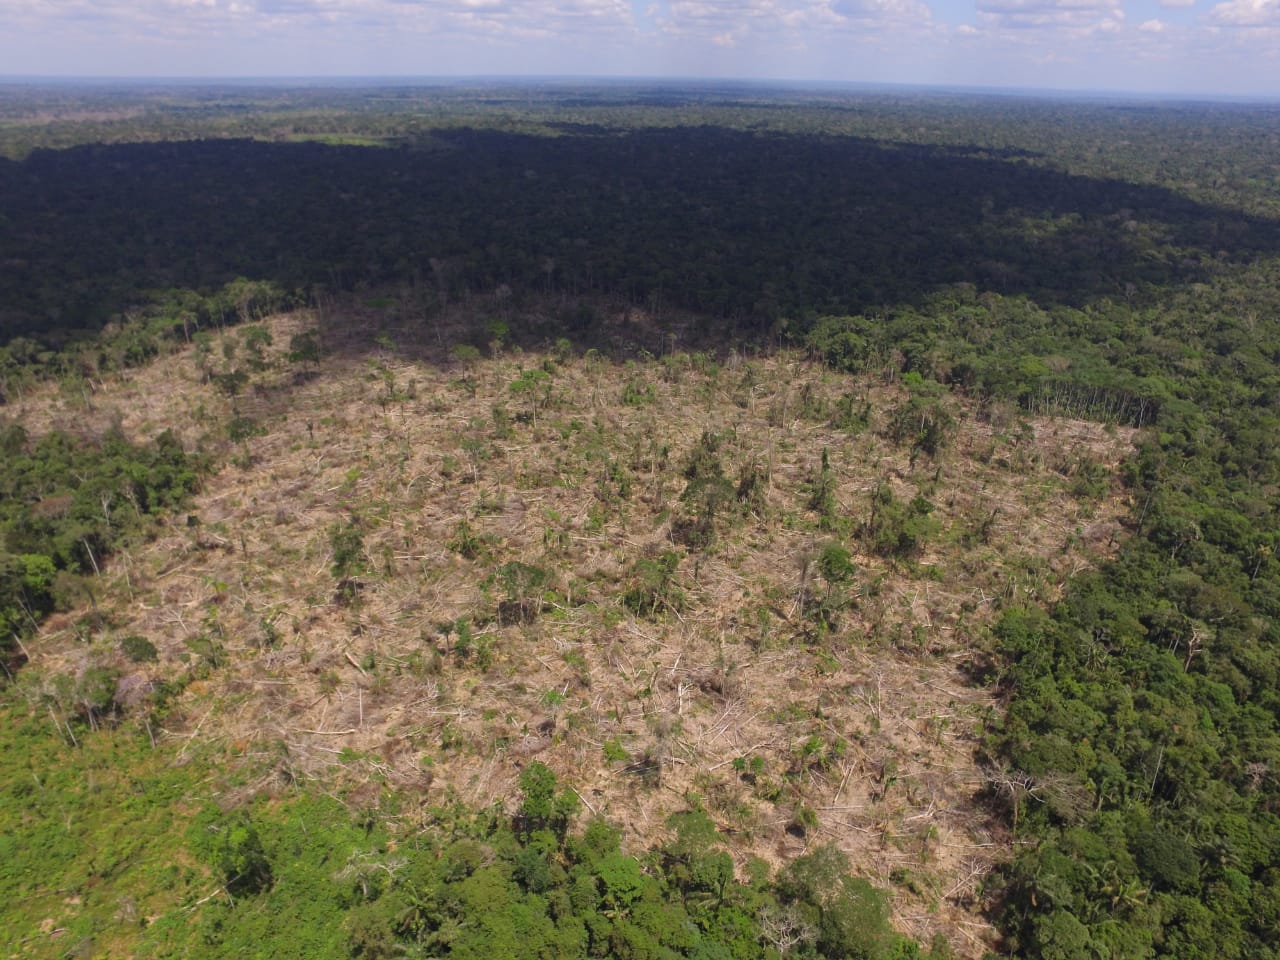 Imagen aérea de deforestación en San José del Guaviare, capital del departamento. Fuente: Corporación para el Desarrollo Sostenible del Norte y el Oriente Amazónico (CDA)